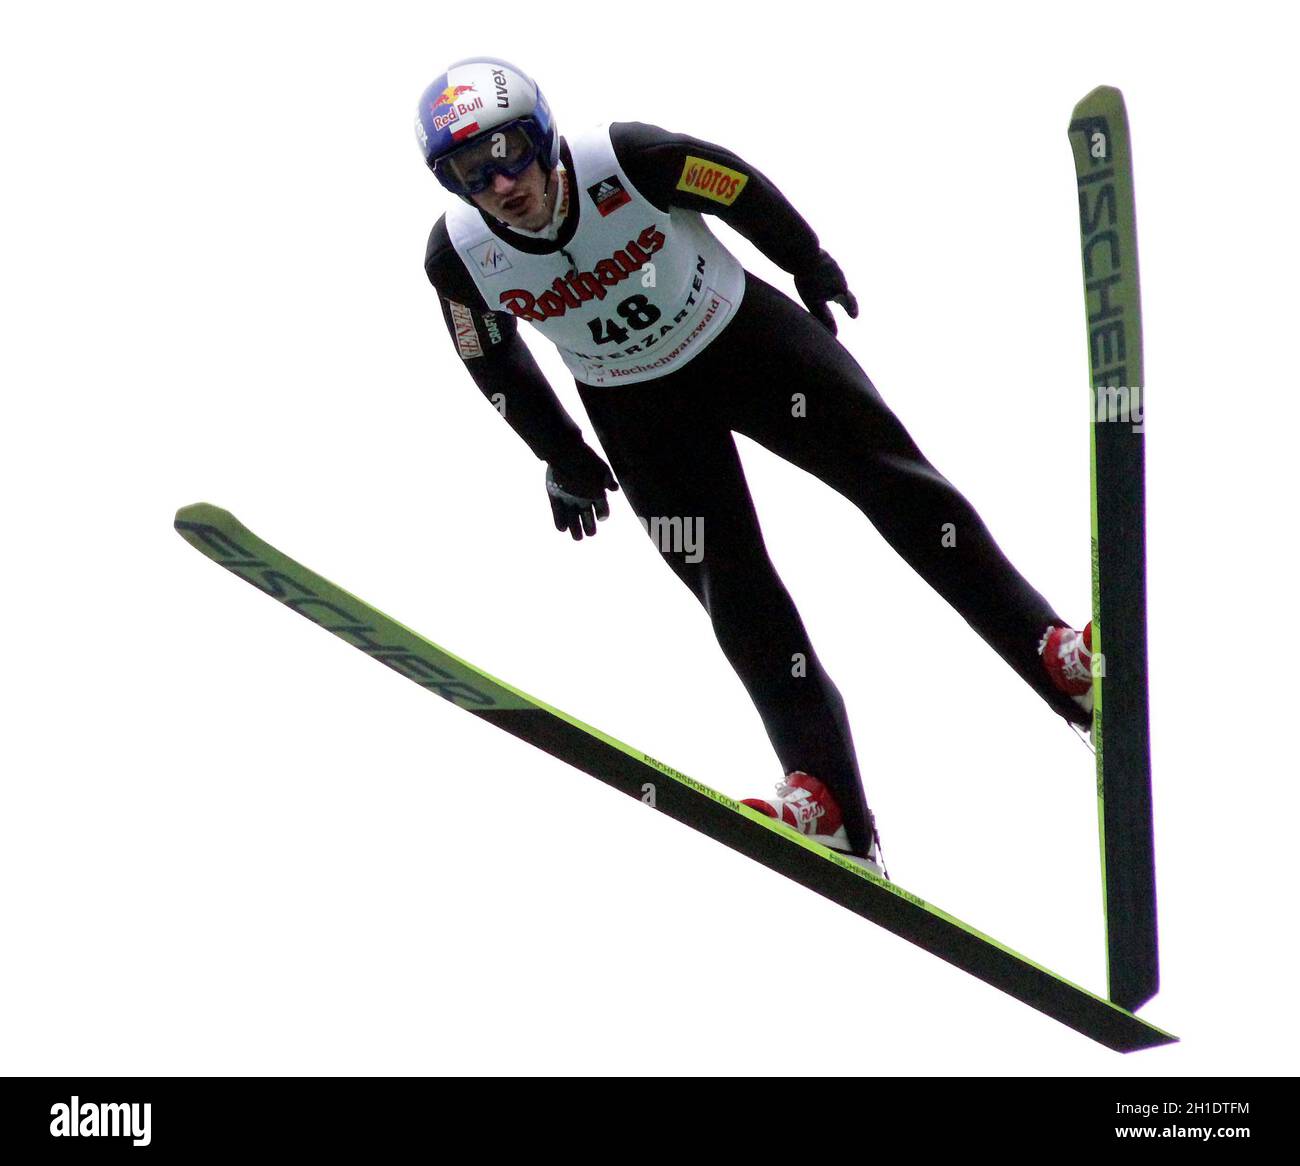 Adam Malysz hat den Einzelwettbewerb der Herren beim FIS Sommer Grand Prix 2010 im Adler Skistadion von Hinterzarten gewonnen Foto de stock